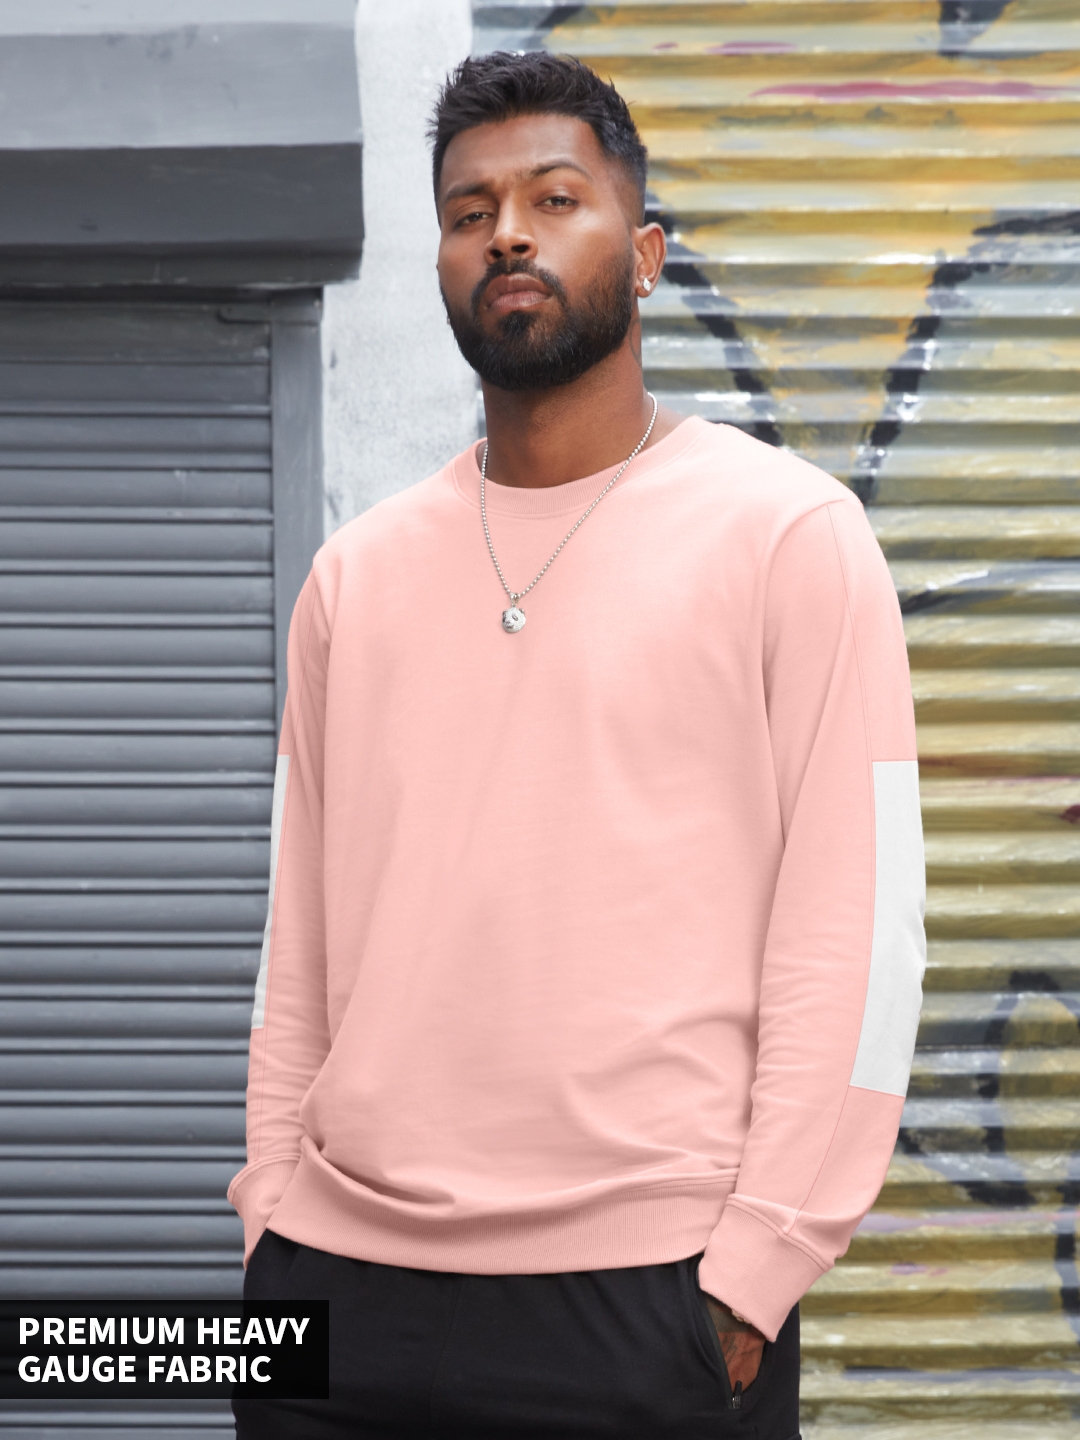 Men's TSS Originals: Baby Pink Sweatshirts